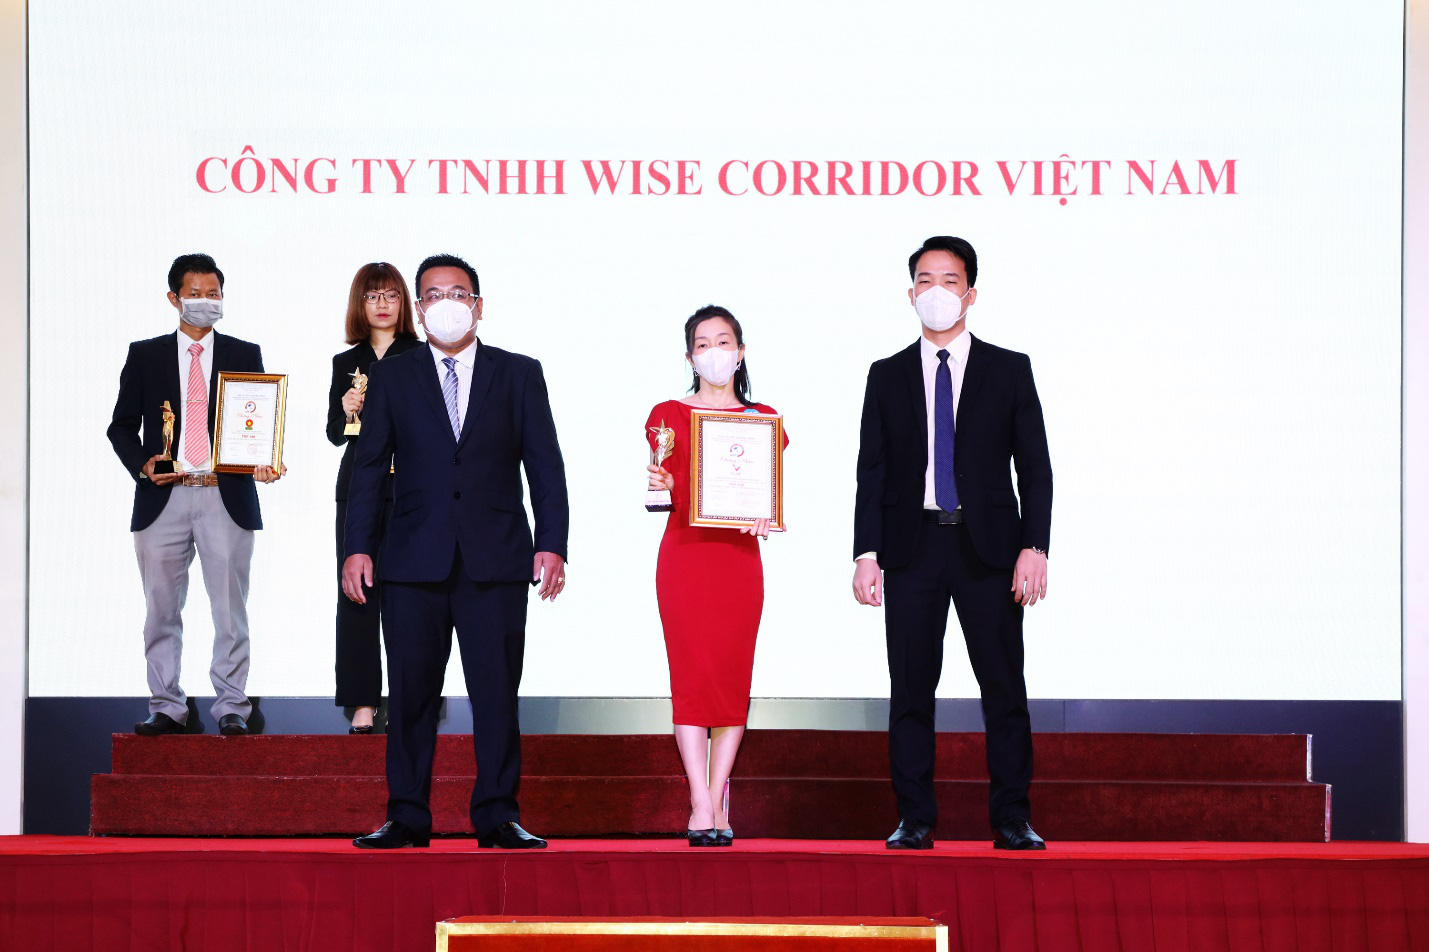 V Live International giành 2 giải thưởng lớn về thương hiệu và chất lượng - Ảnh 3.